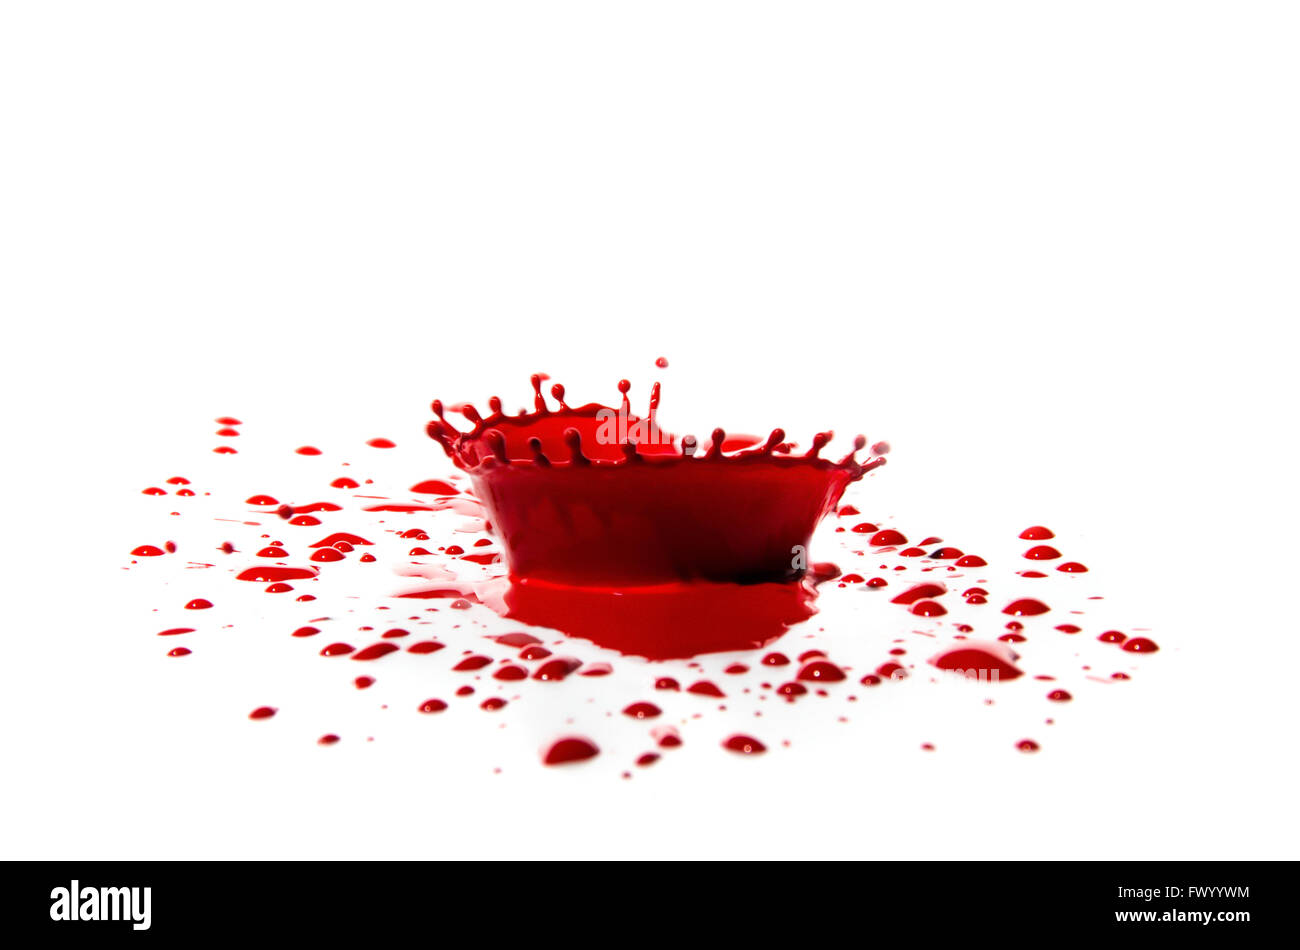 Salpicaduras de pintura roja y un montón de gotas de color rojo alrededor del aislado sobre fondo blanco. Foto de stock